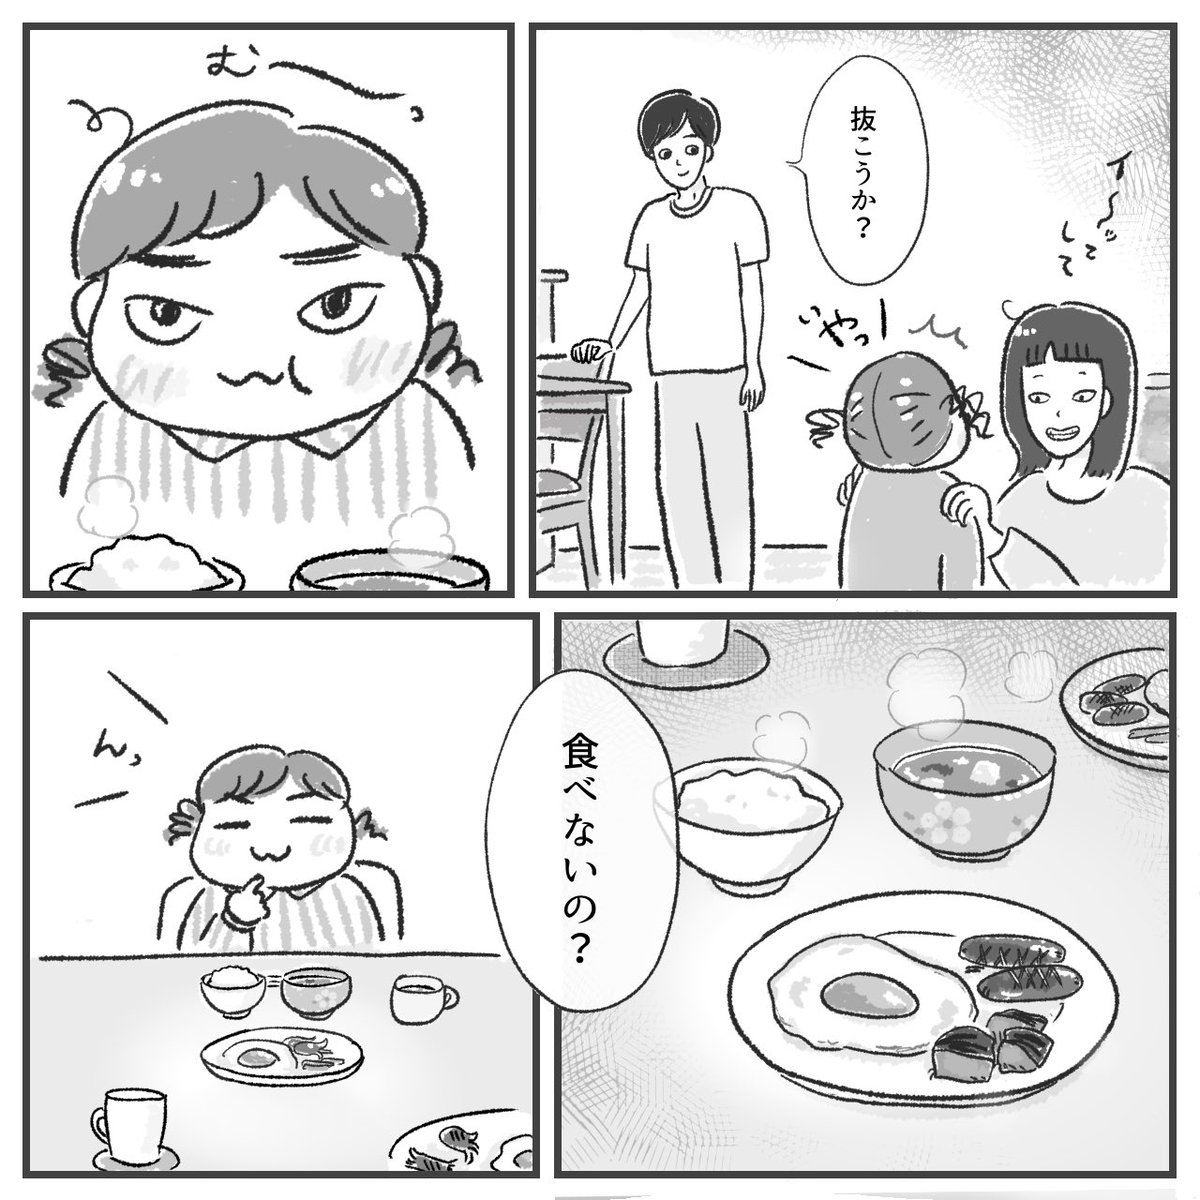 最近よく思うこと(1/2)
#漫画が読めるハッシュタグ 